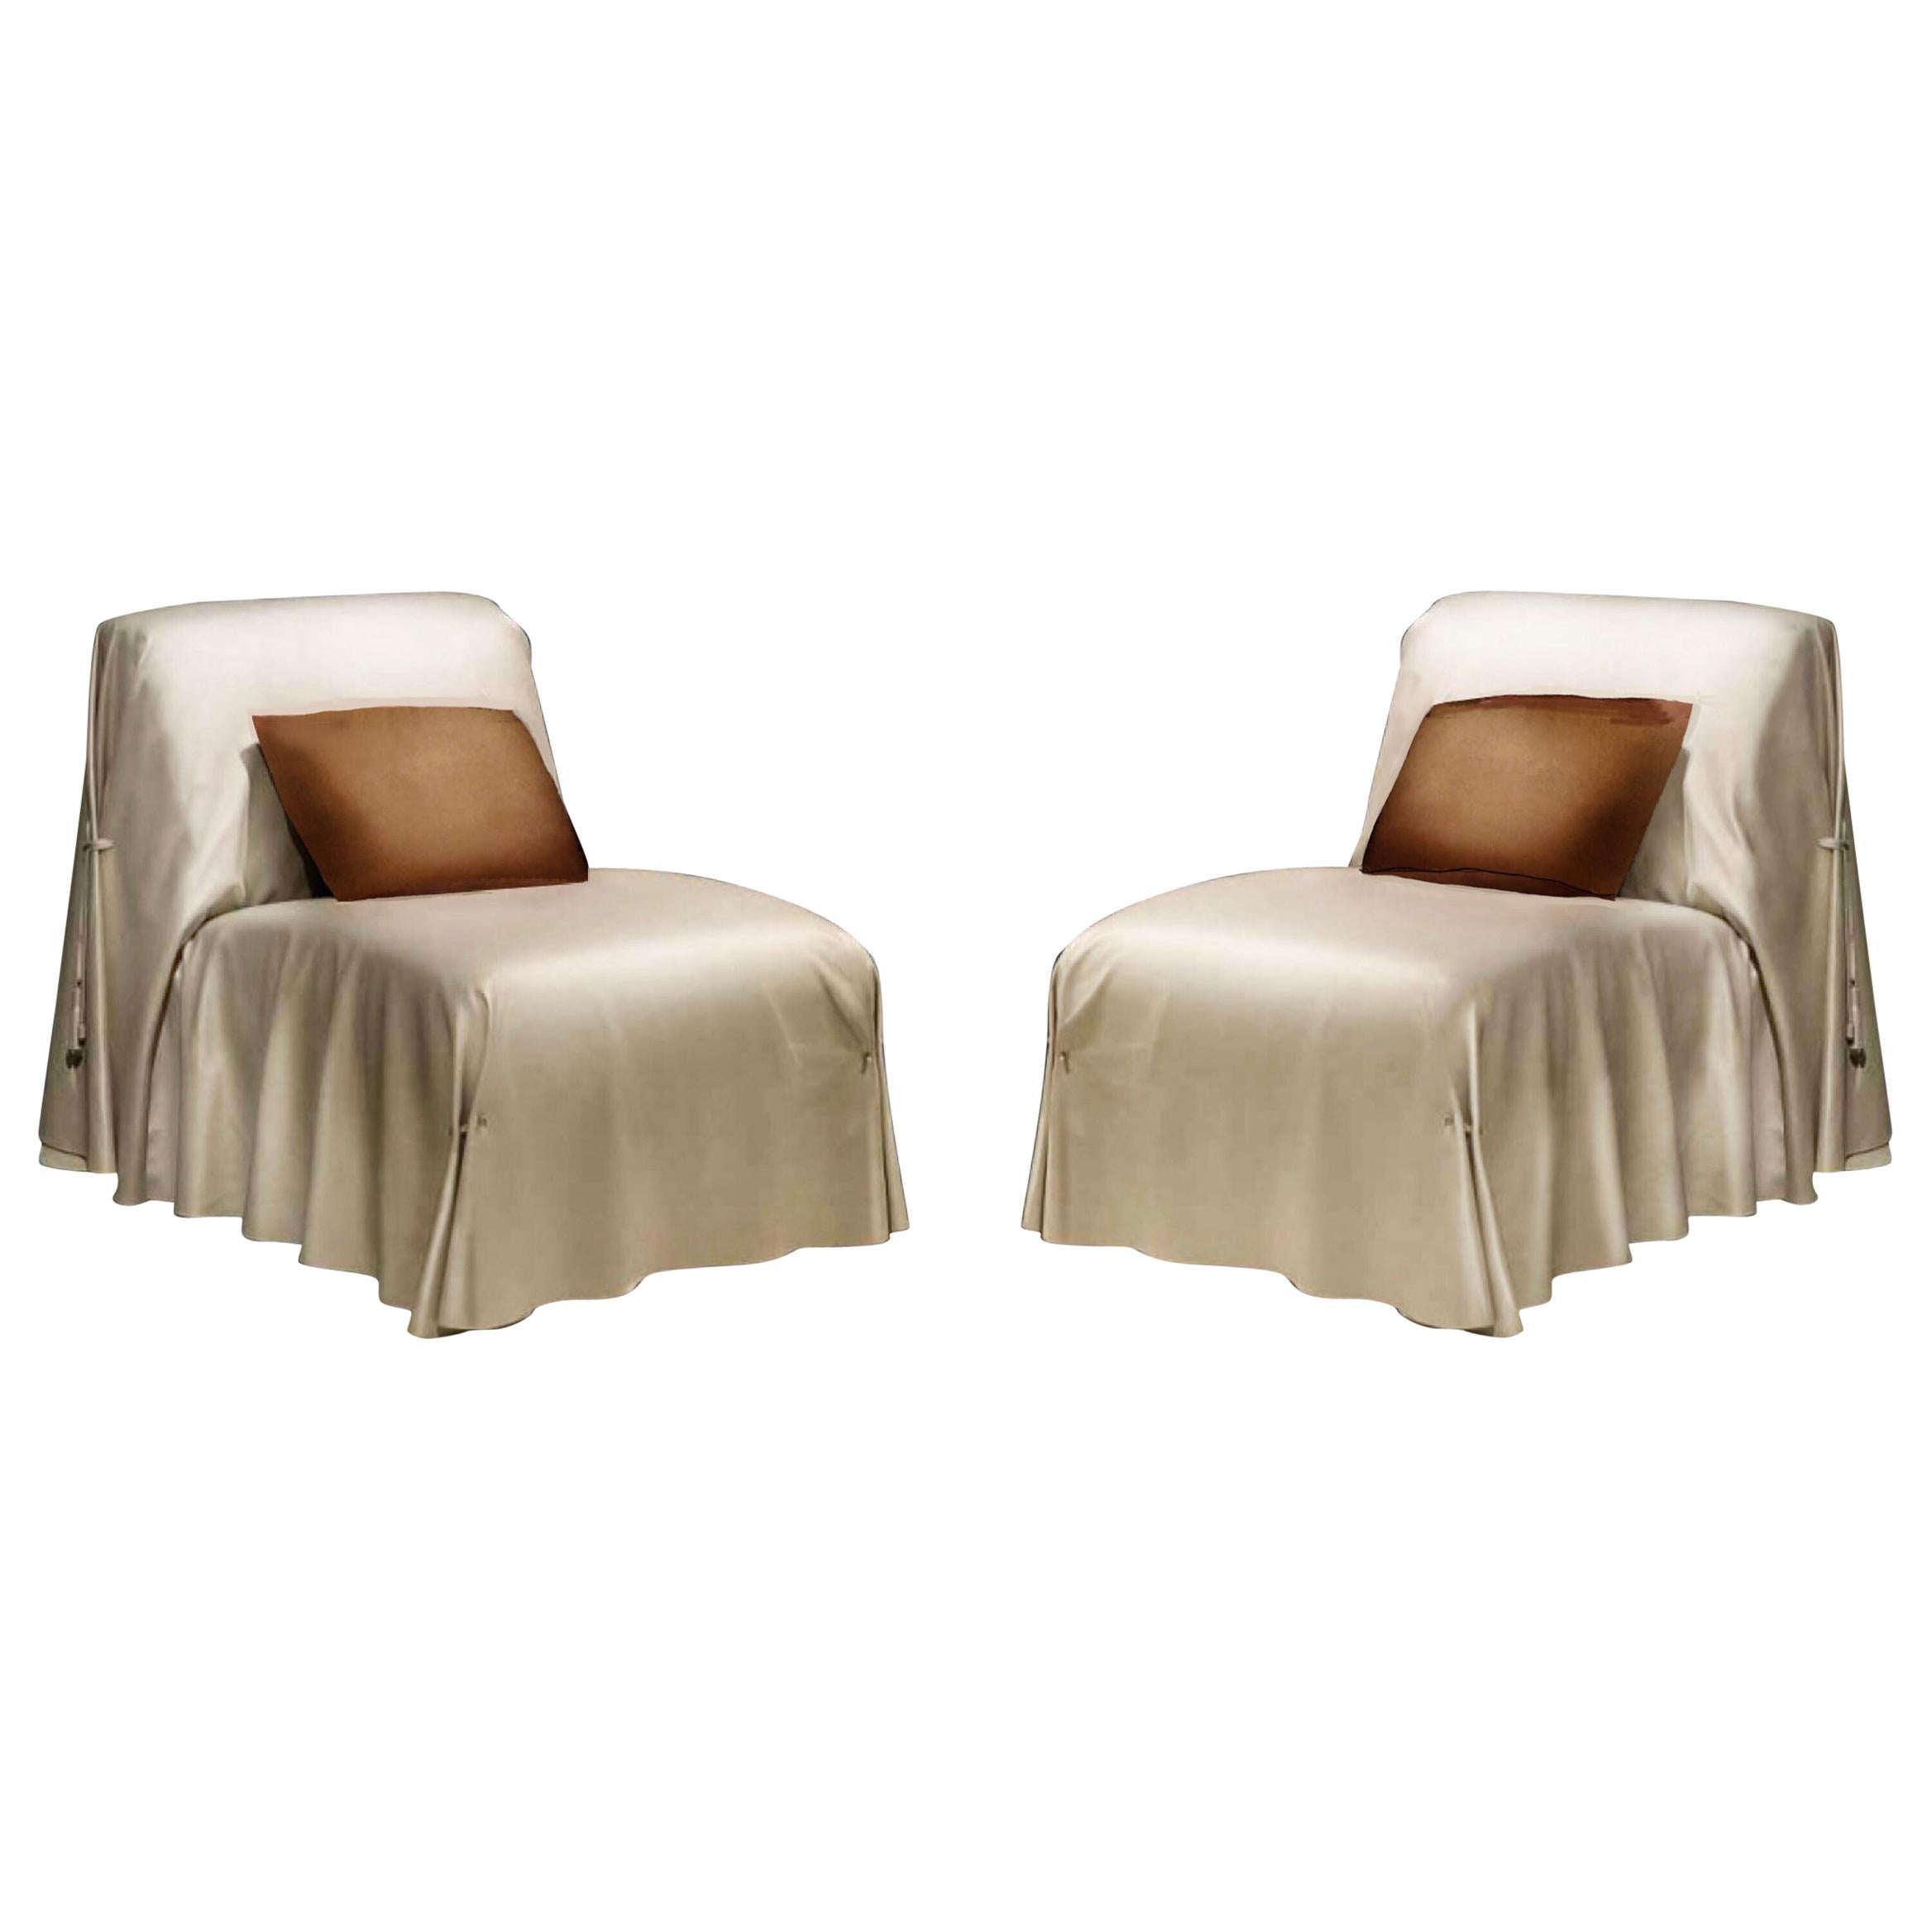 Fendi Casa Tunica Italian Leather Lounge Chair, Modern Sculptural Slipper Chair